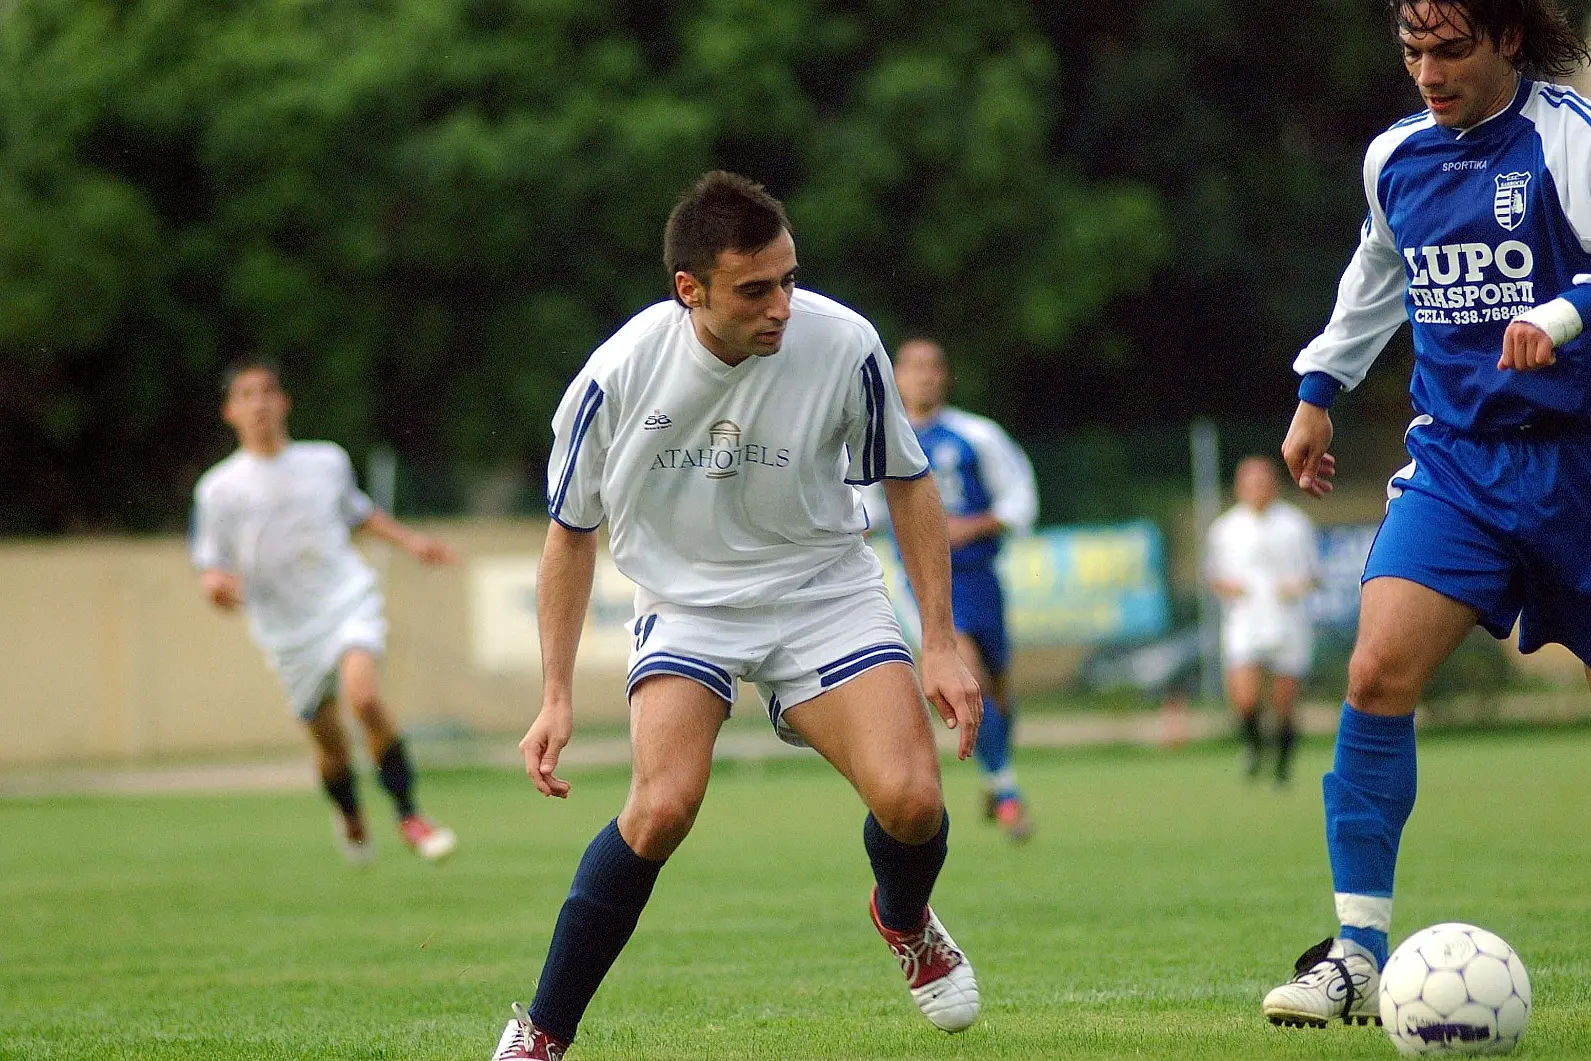 In primo piano Fabio Nicosia, attaccante della Pgs Audax, in azione con la maglia del Villasimius qualche anno fa (foto concessa da Fabio Nicosia)